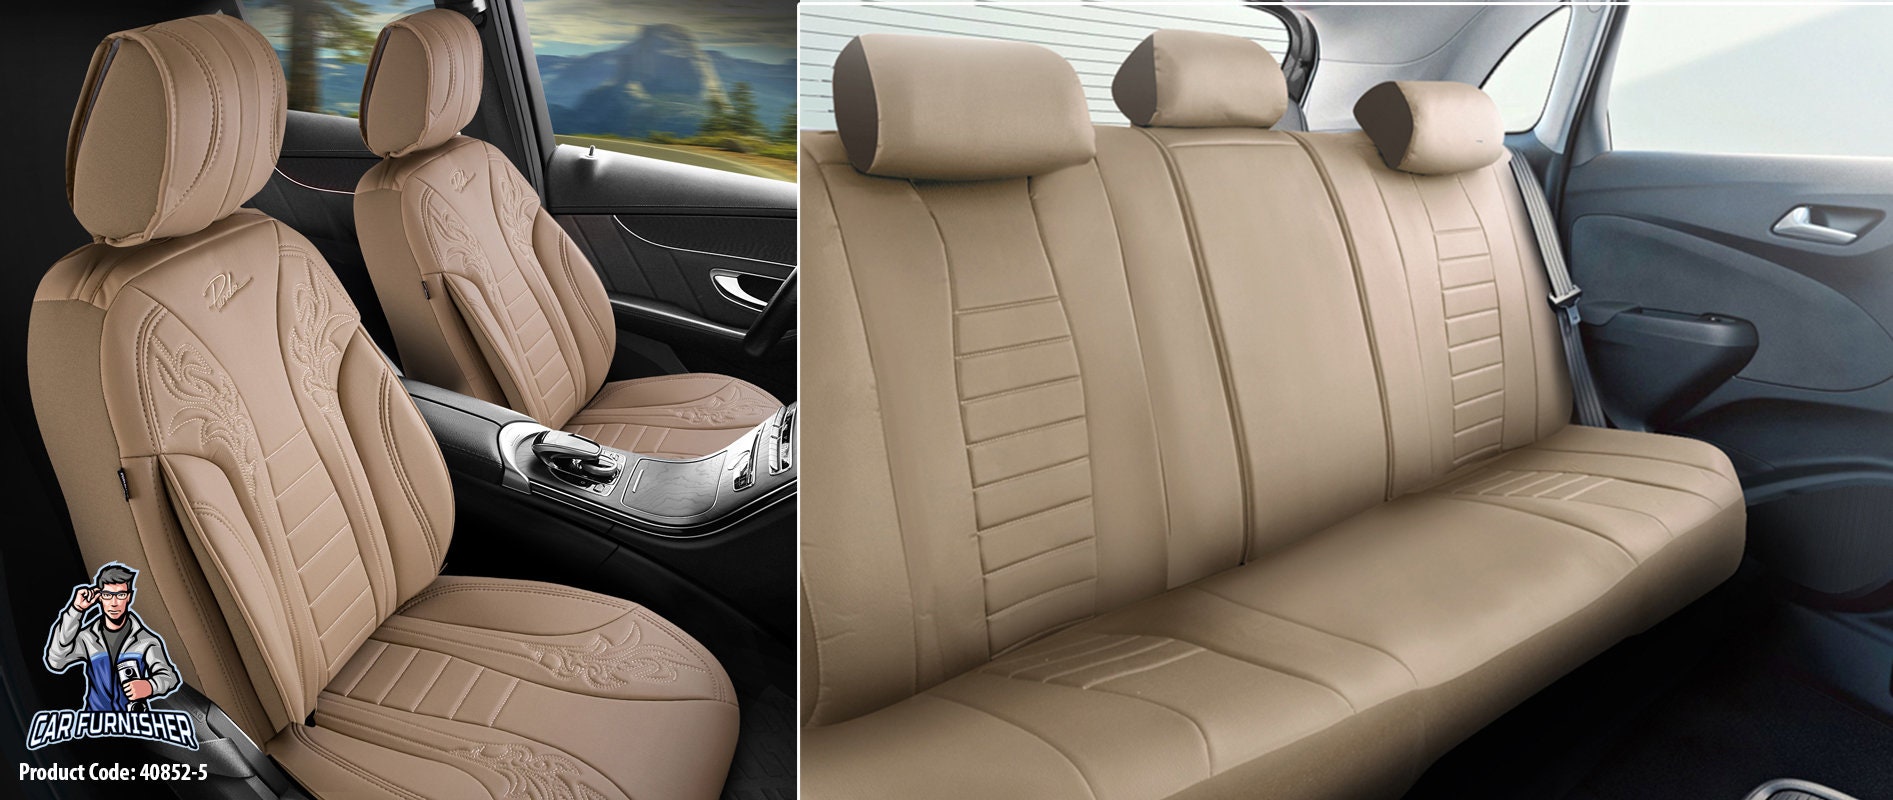 Autositzbezug 5 Farben Komplettset Autozubehör Leder Komfortabel Qualität  Kompatibel mit Armlehnen Mode Transformation - .de